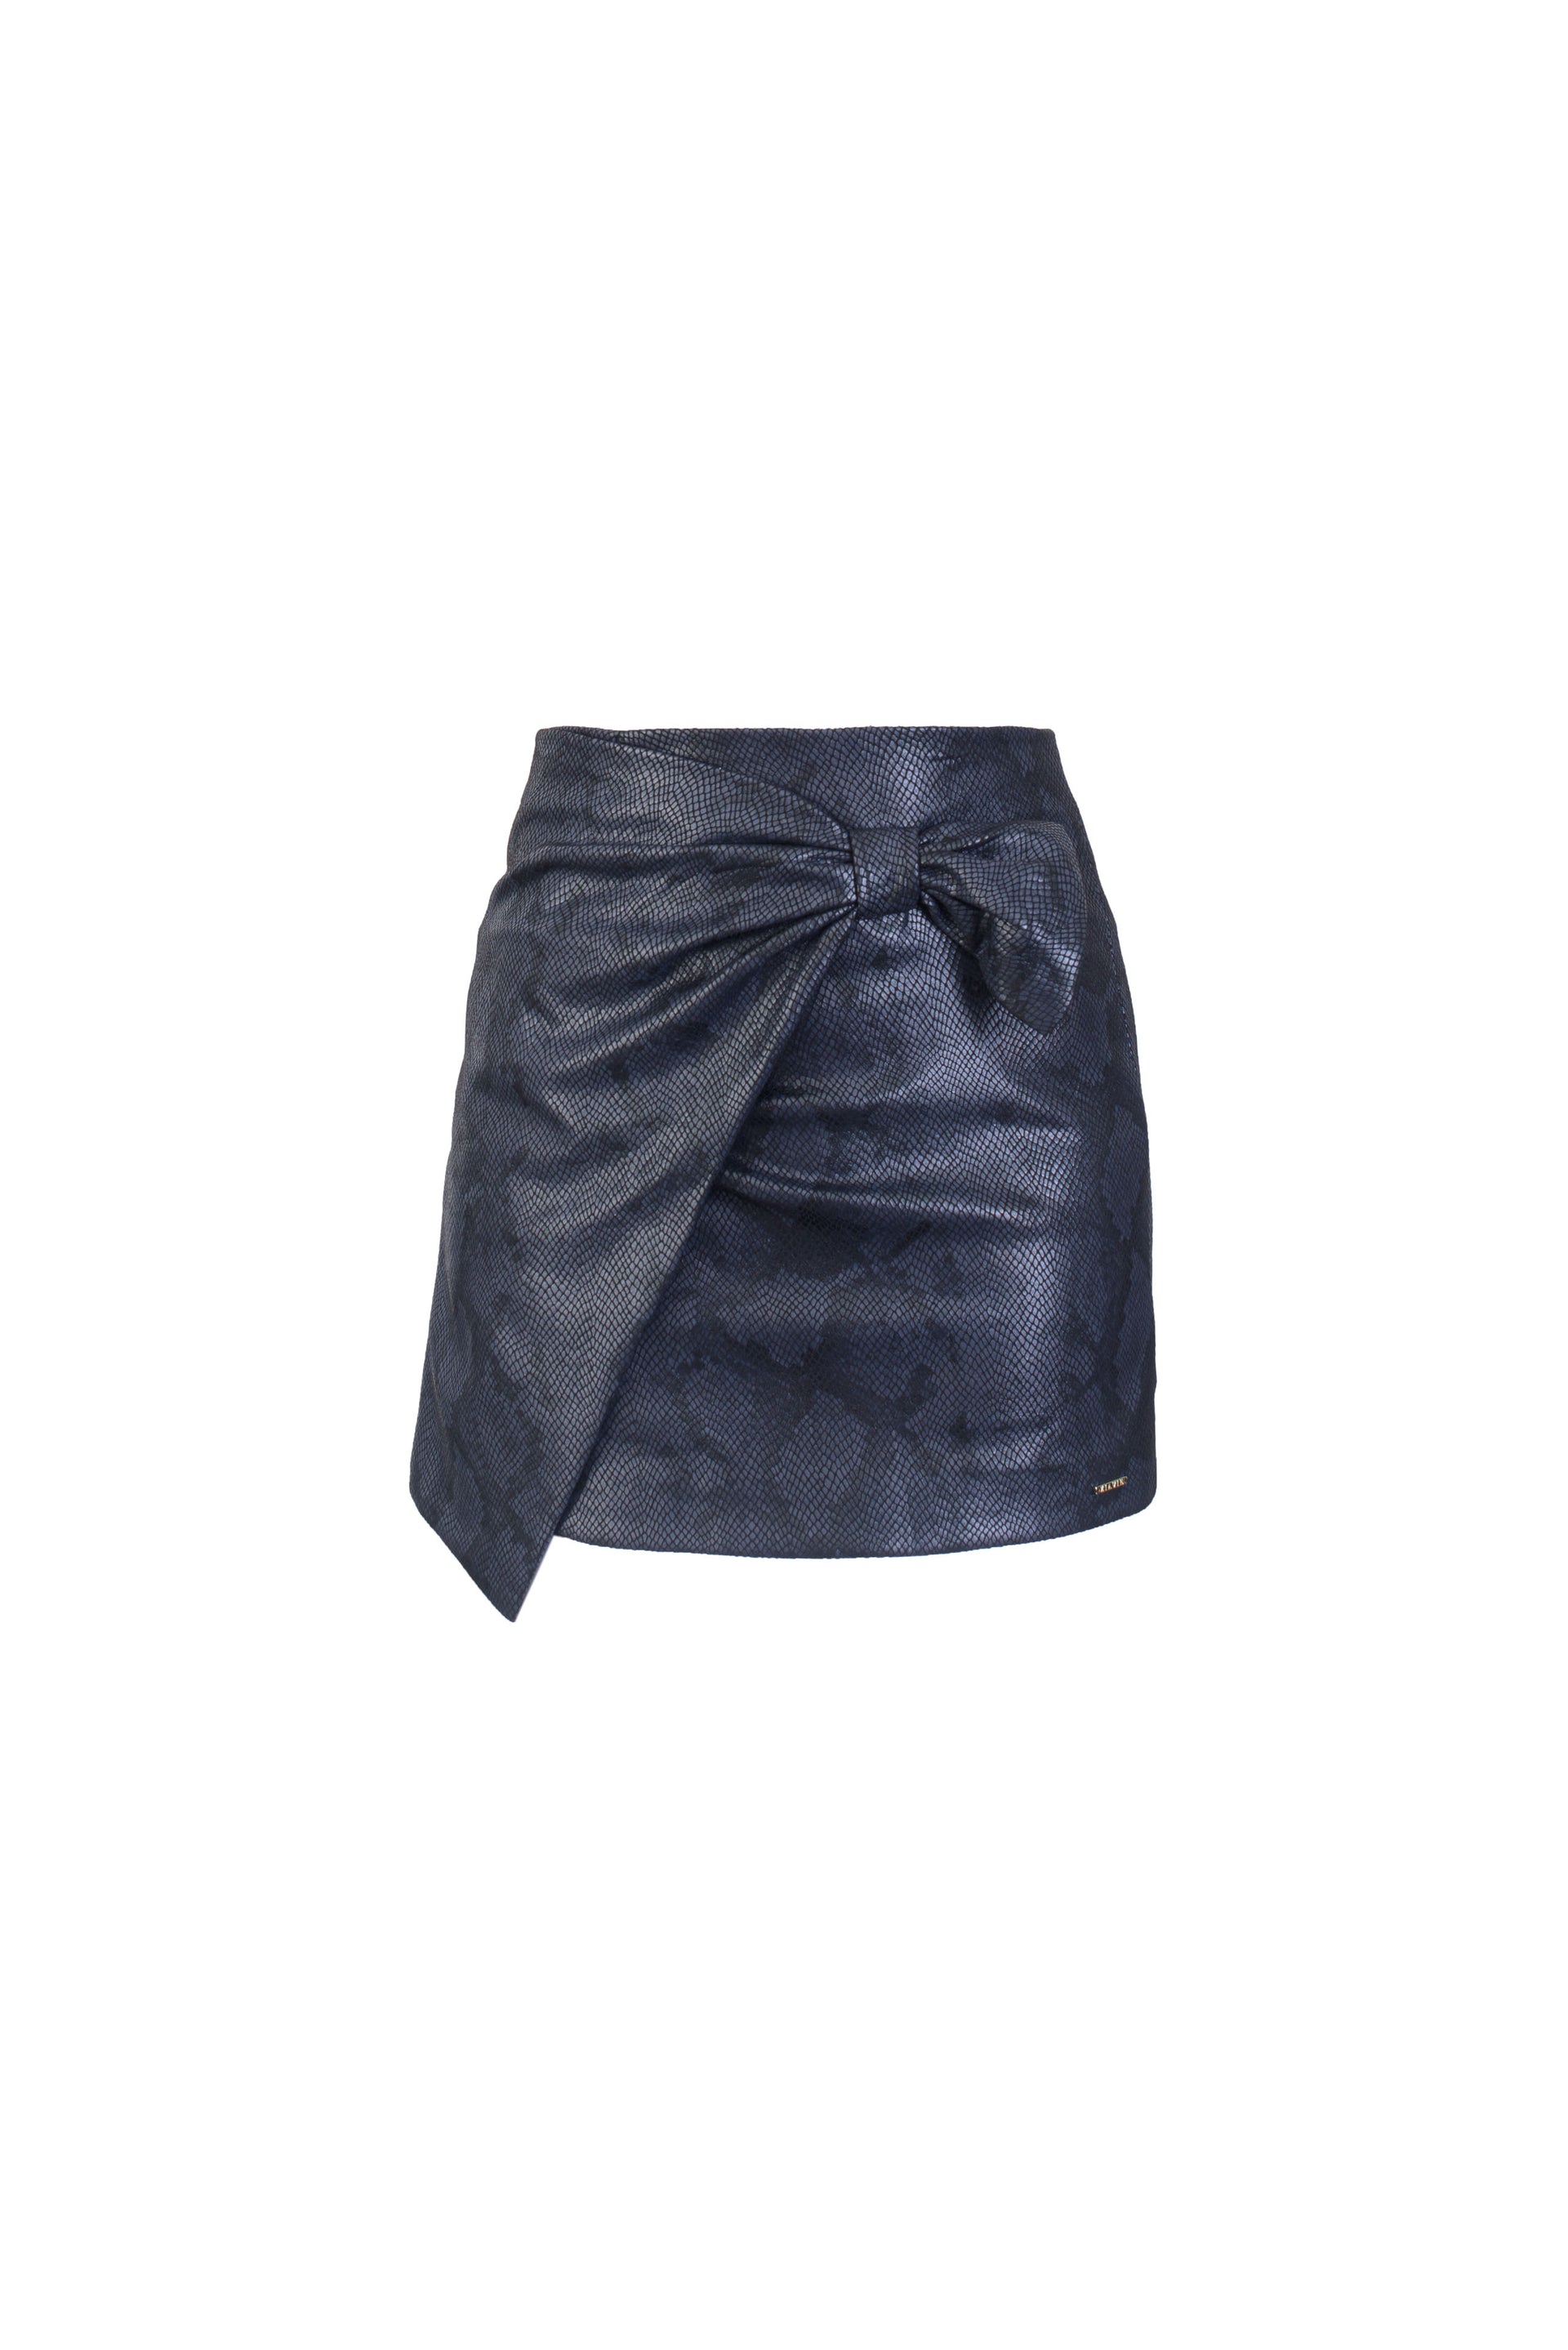 Leather skirts - navy – Lanugo